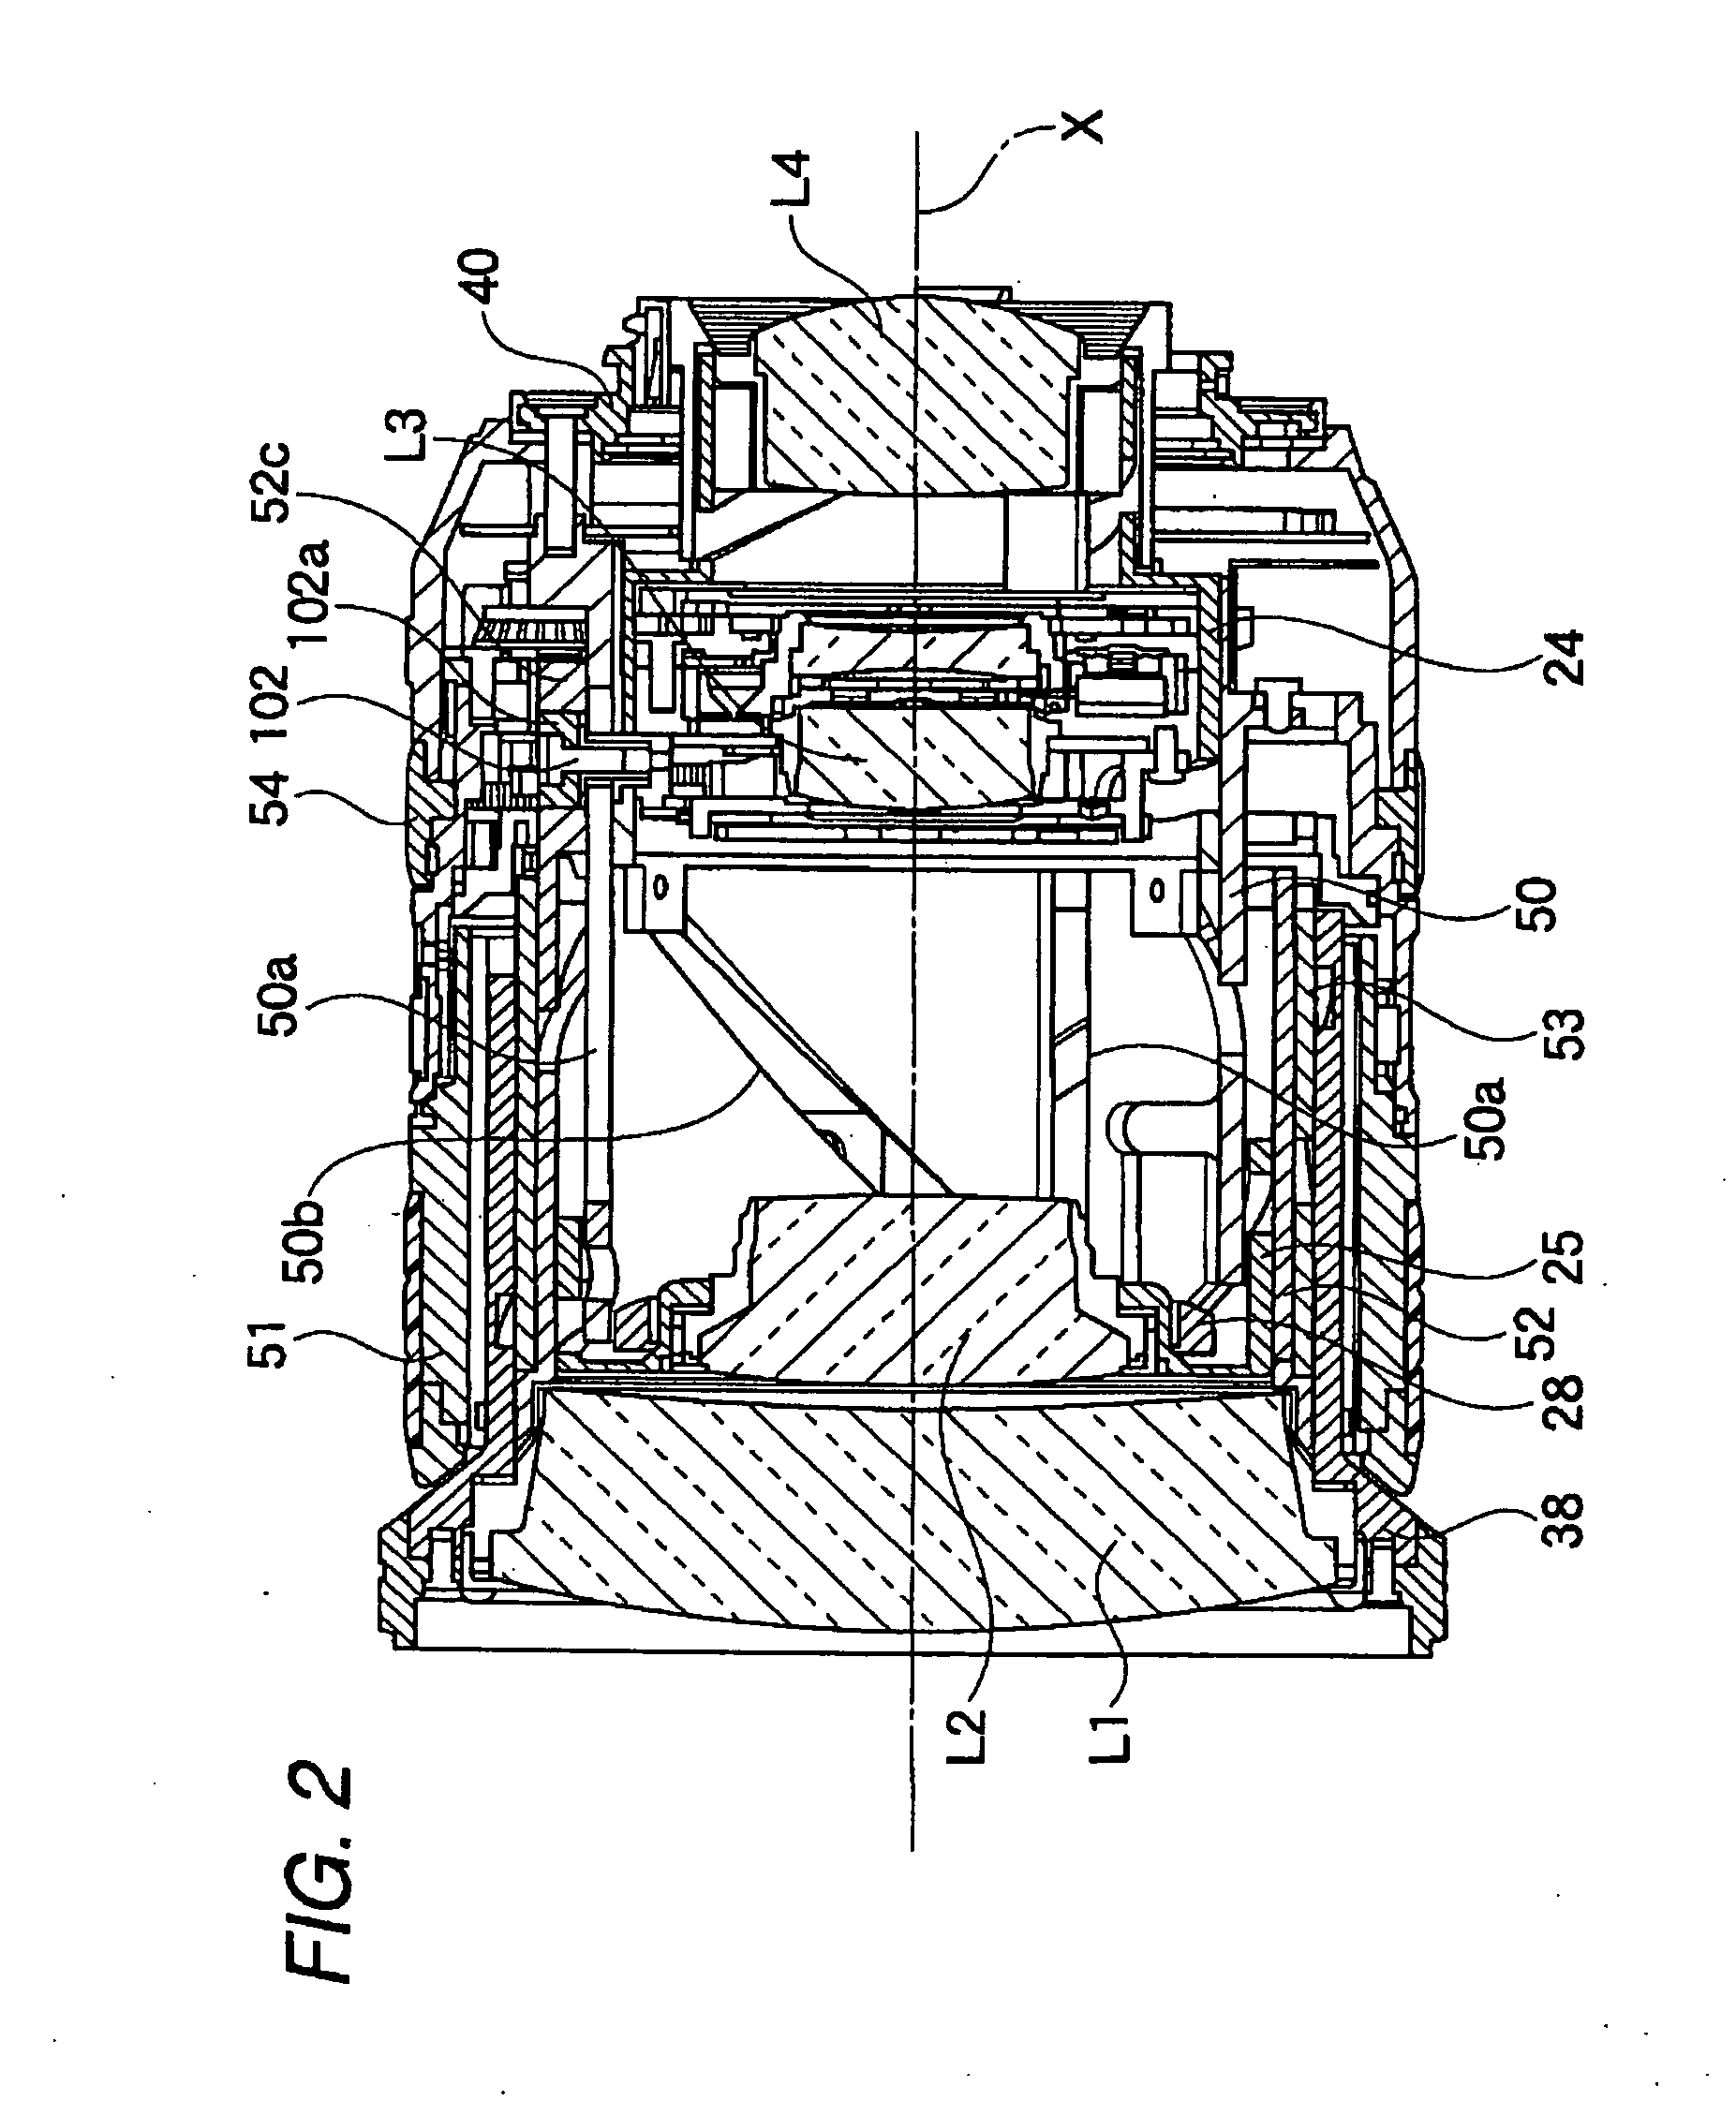 Lens barrel and method of operation of lens barrel